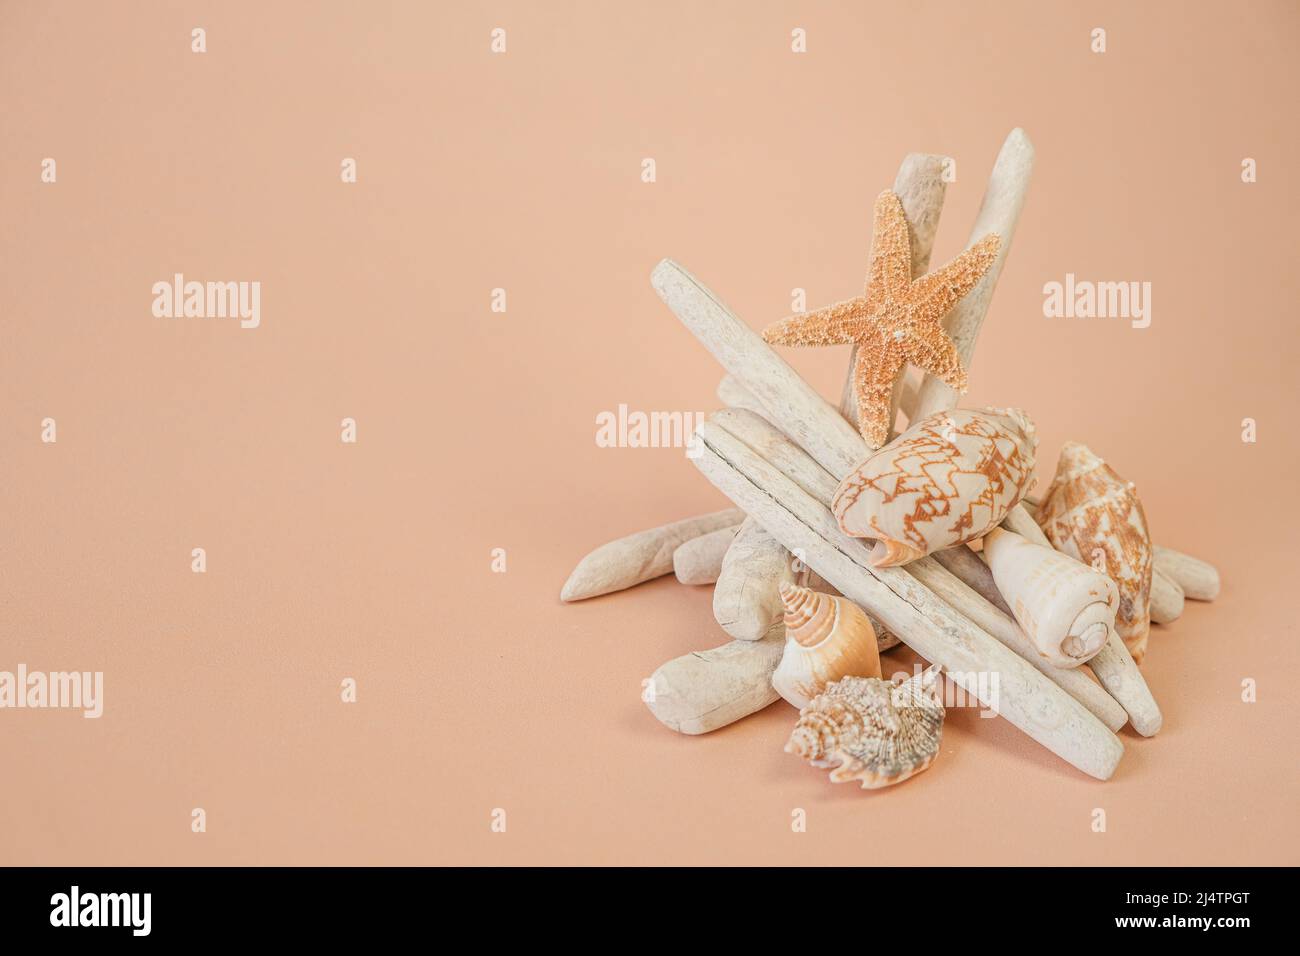 driftwood background.Driftwood bastoni, stelle marine e rete di pesca bianca su sfondo crema.decorazione in legno naturale in uno stile nautico. Foto Stock